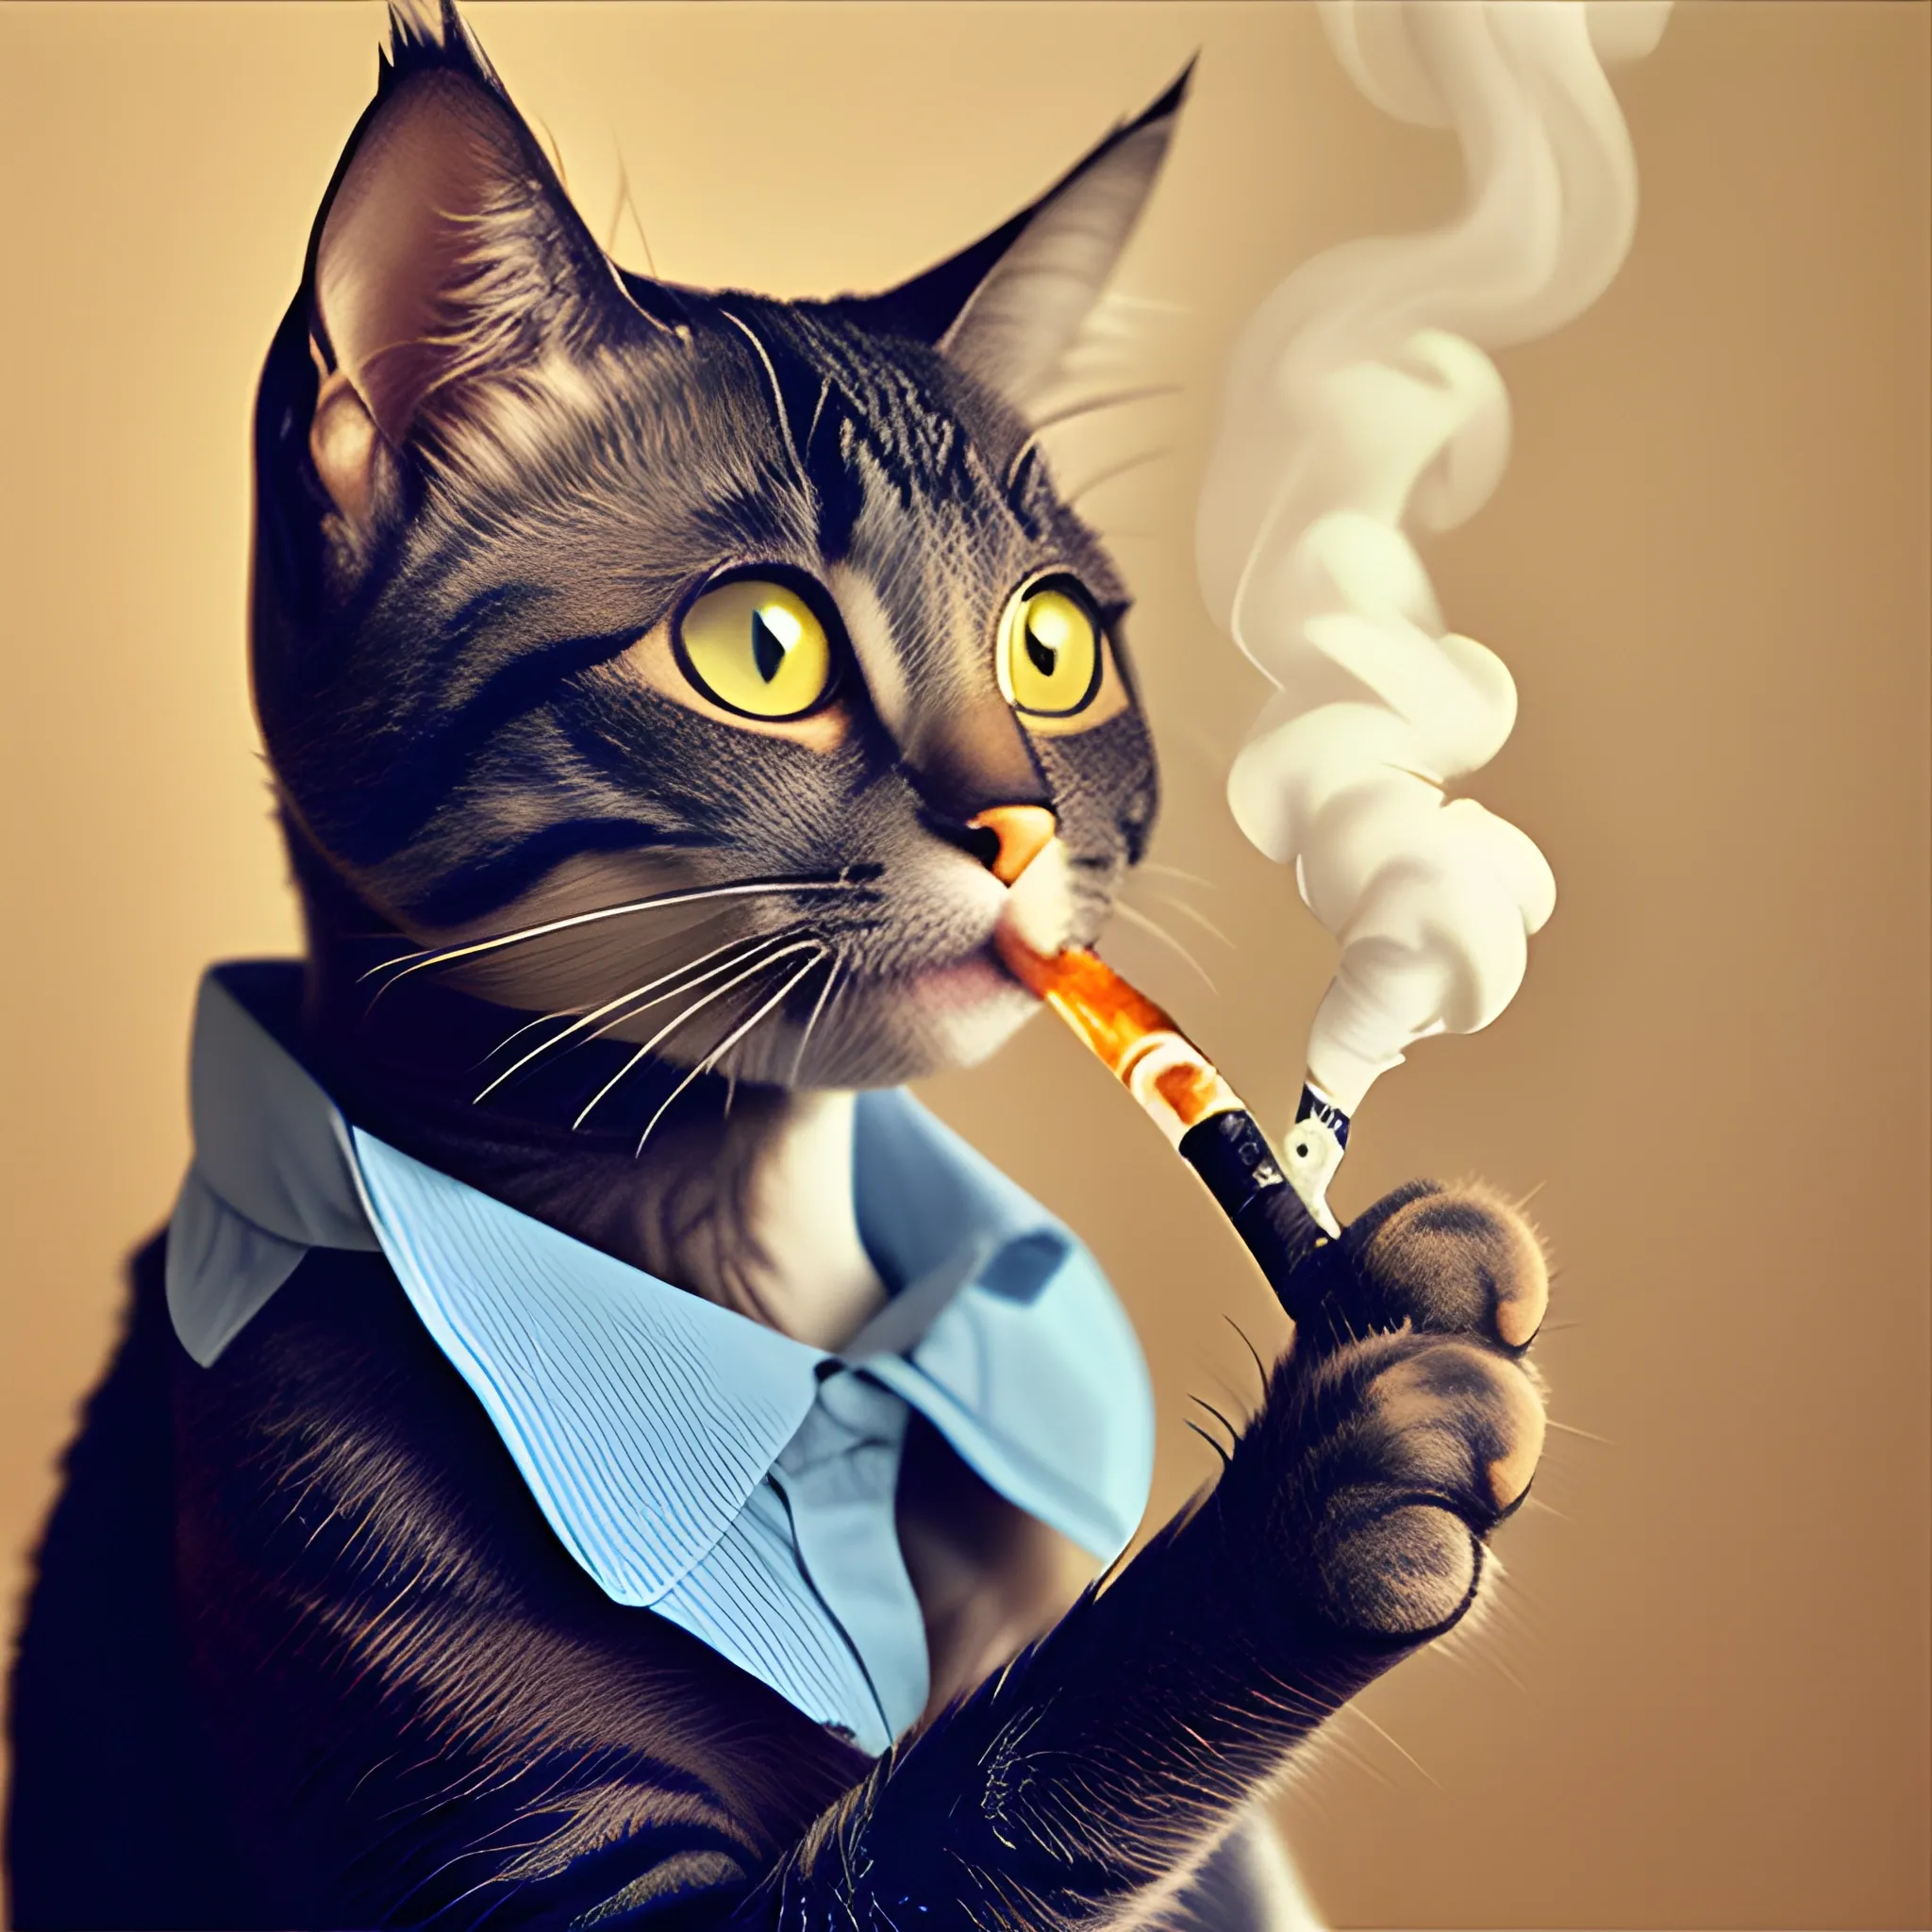 Cat smoking - Arthub.ai